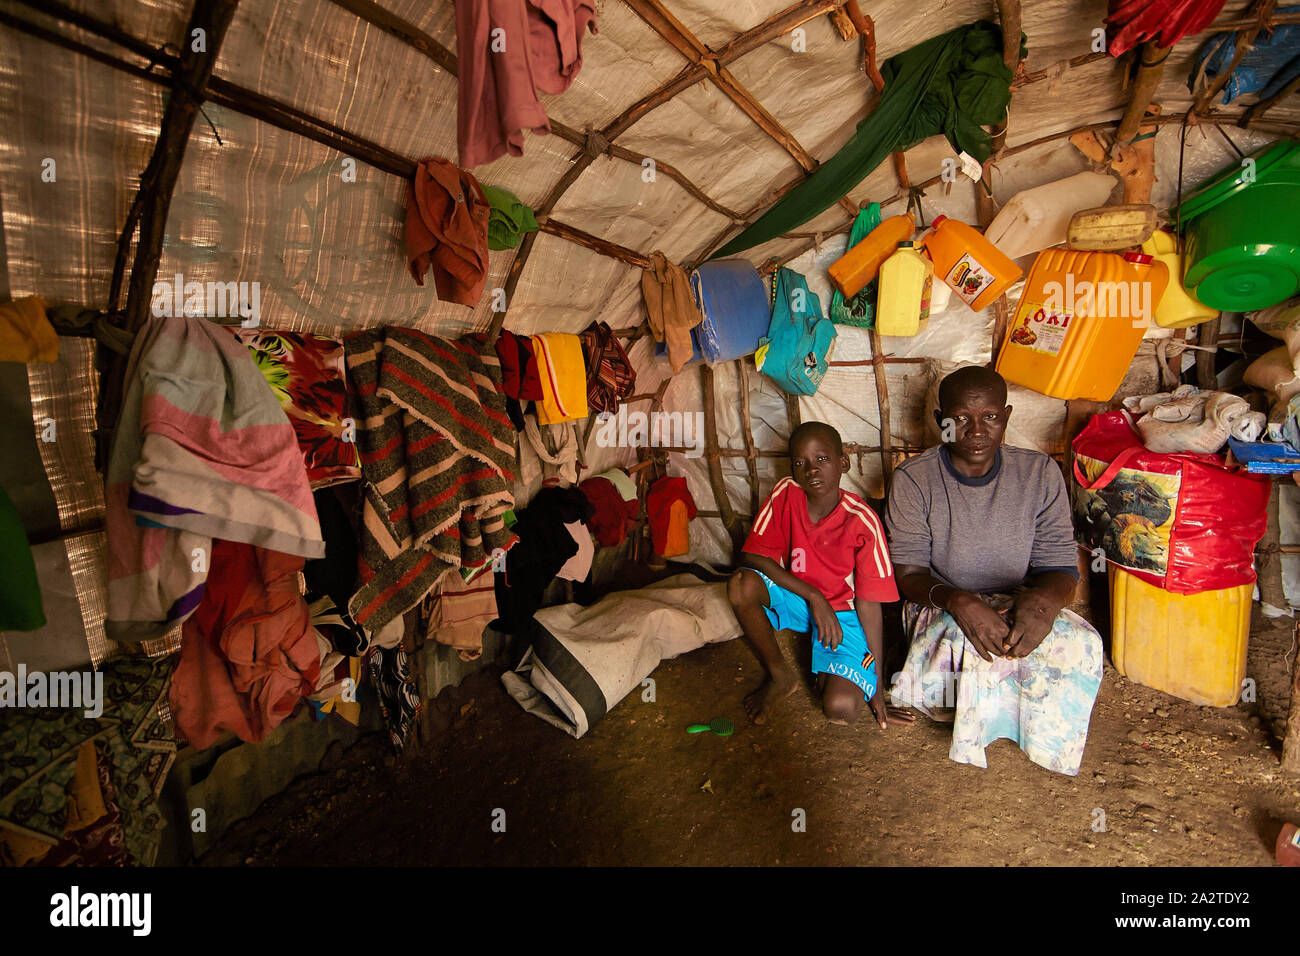 Soudan du Sud Juba refugeecamp d'IDP de Gumbo Joos Apuw (8) a la Mère Martine Nikidi épileptique (42) 04-06-2014 Photo Claude Rostand Jaco Banque D'Images